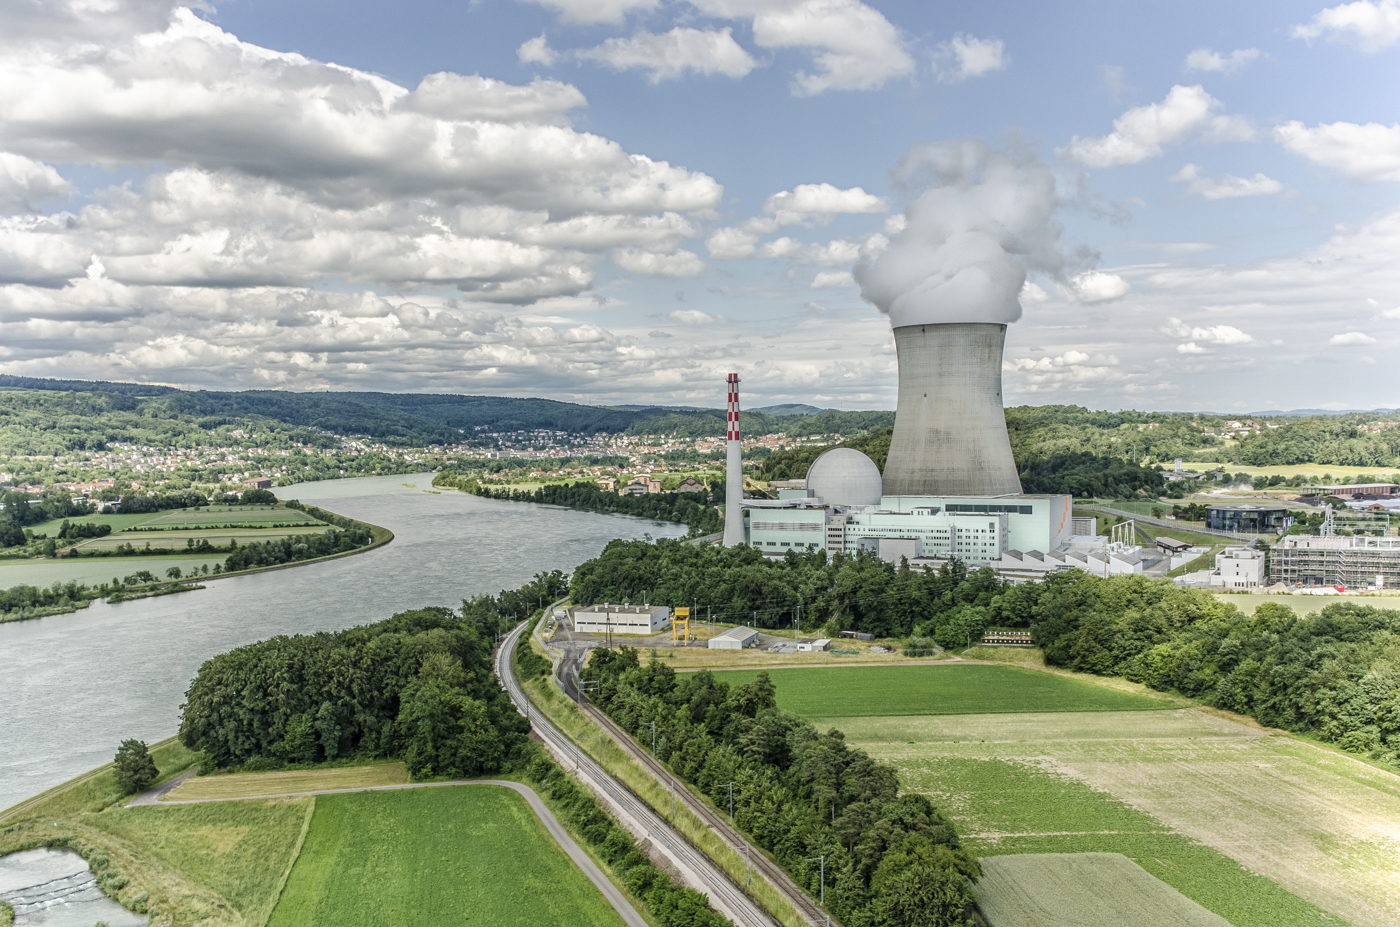 Kernkraftwerk, Leibstadt, Luftaufnahme